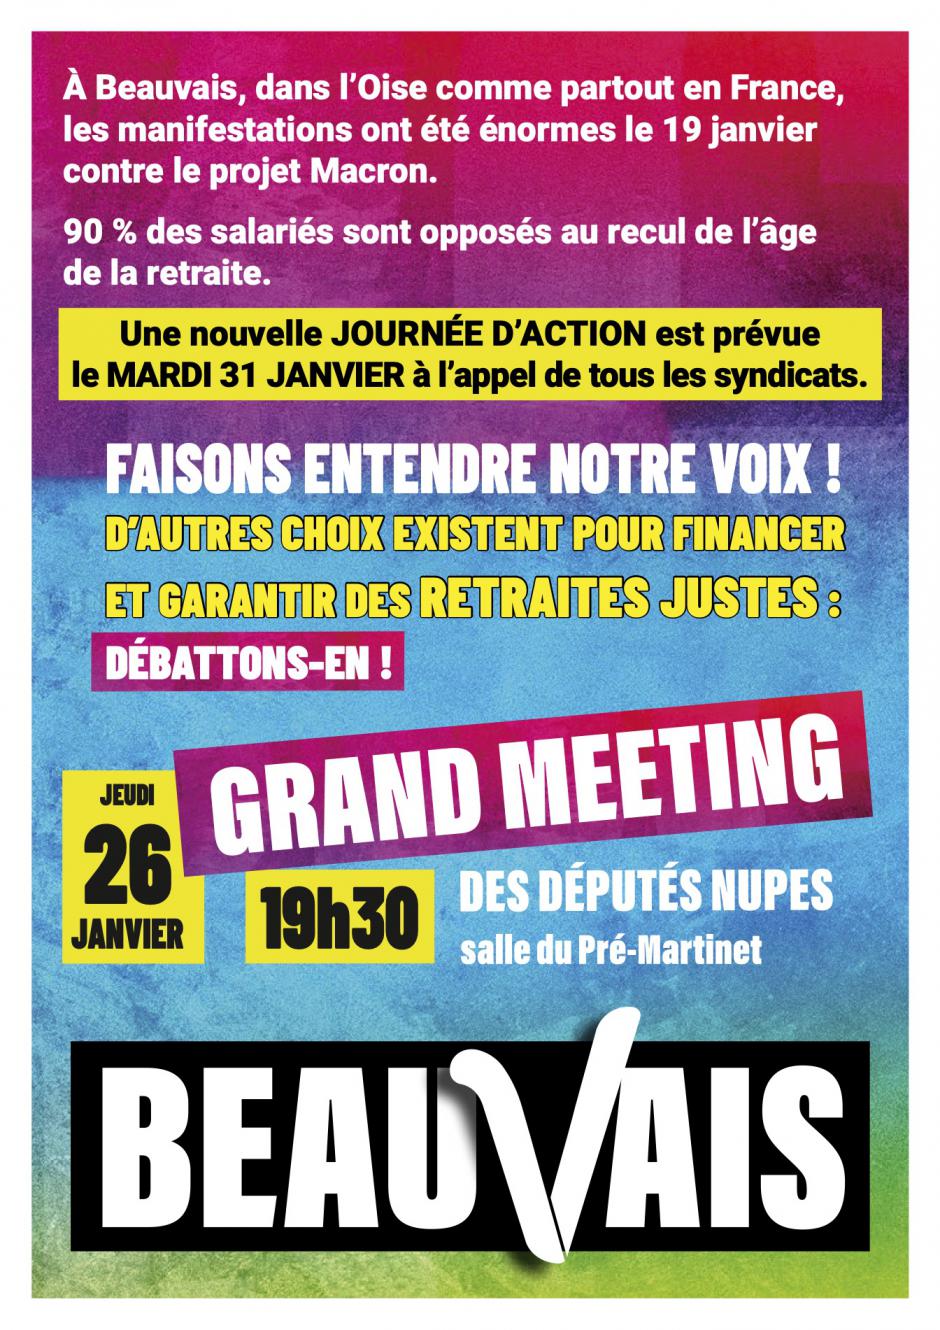 26 janvier, Beauvais - Meeting unitaire « Non au projet Macron-Borne, oui à une réforme progressiste des retraites ! », avec des député·e·s de la Nupes